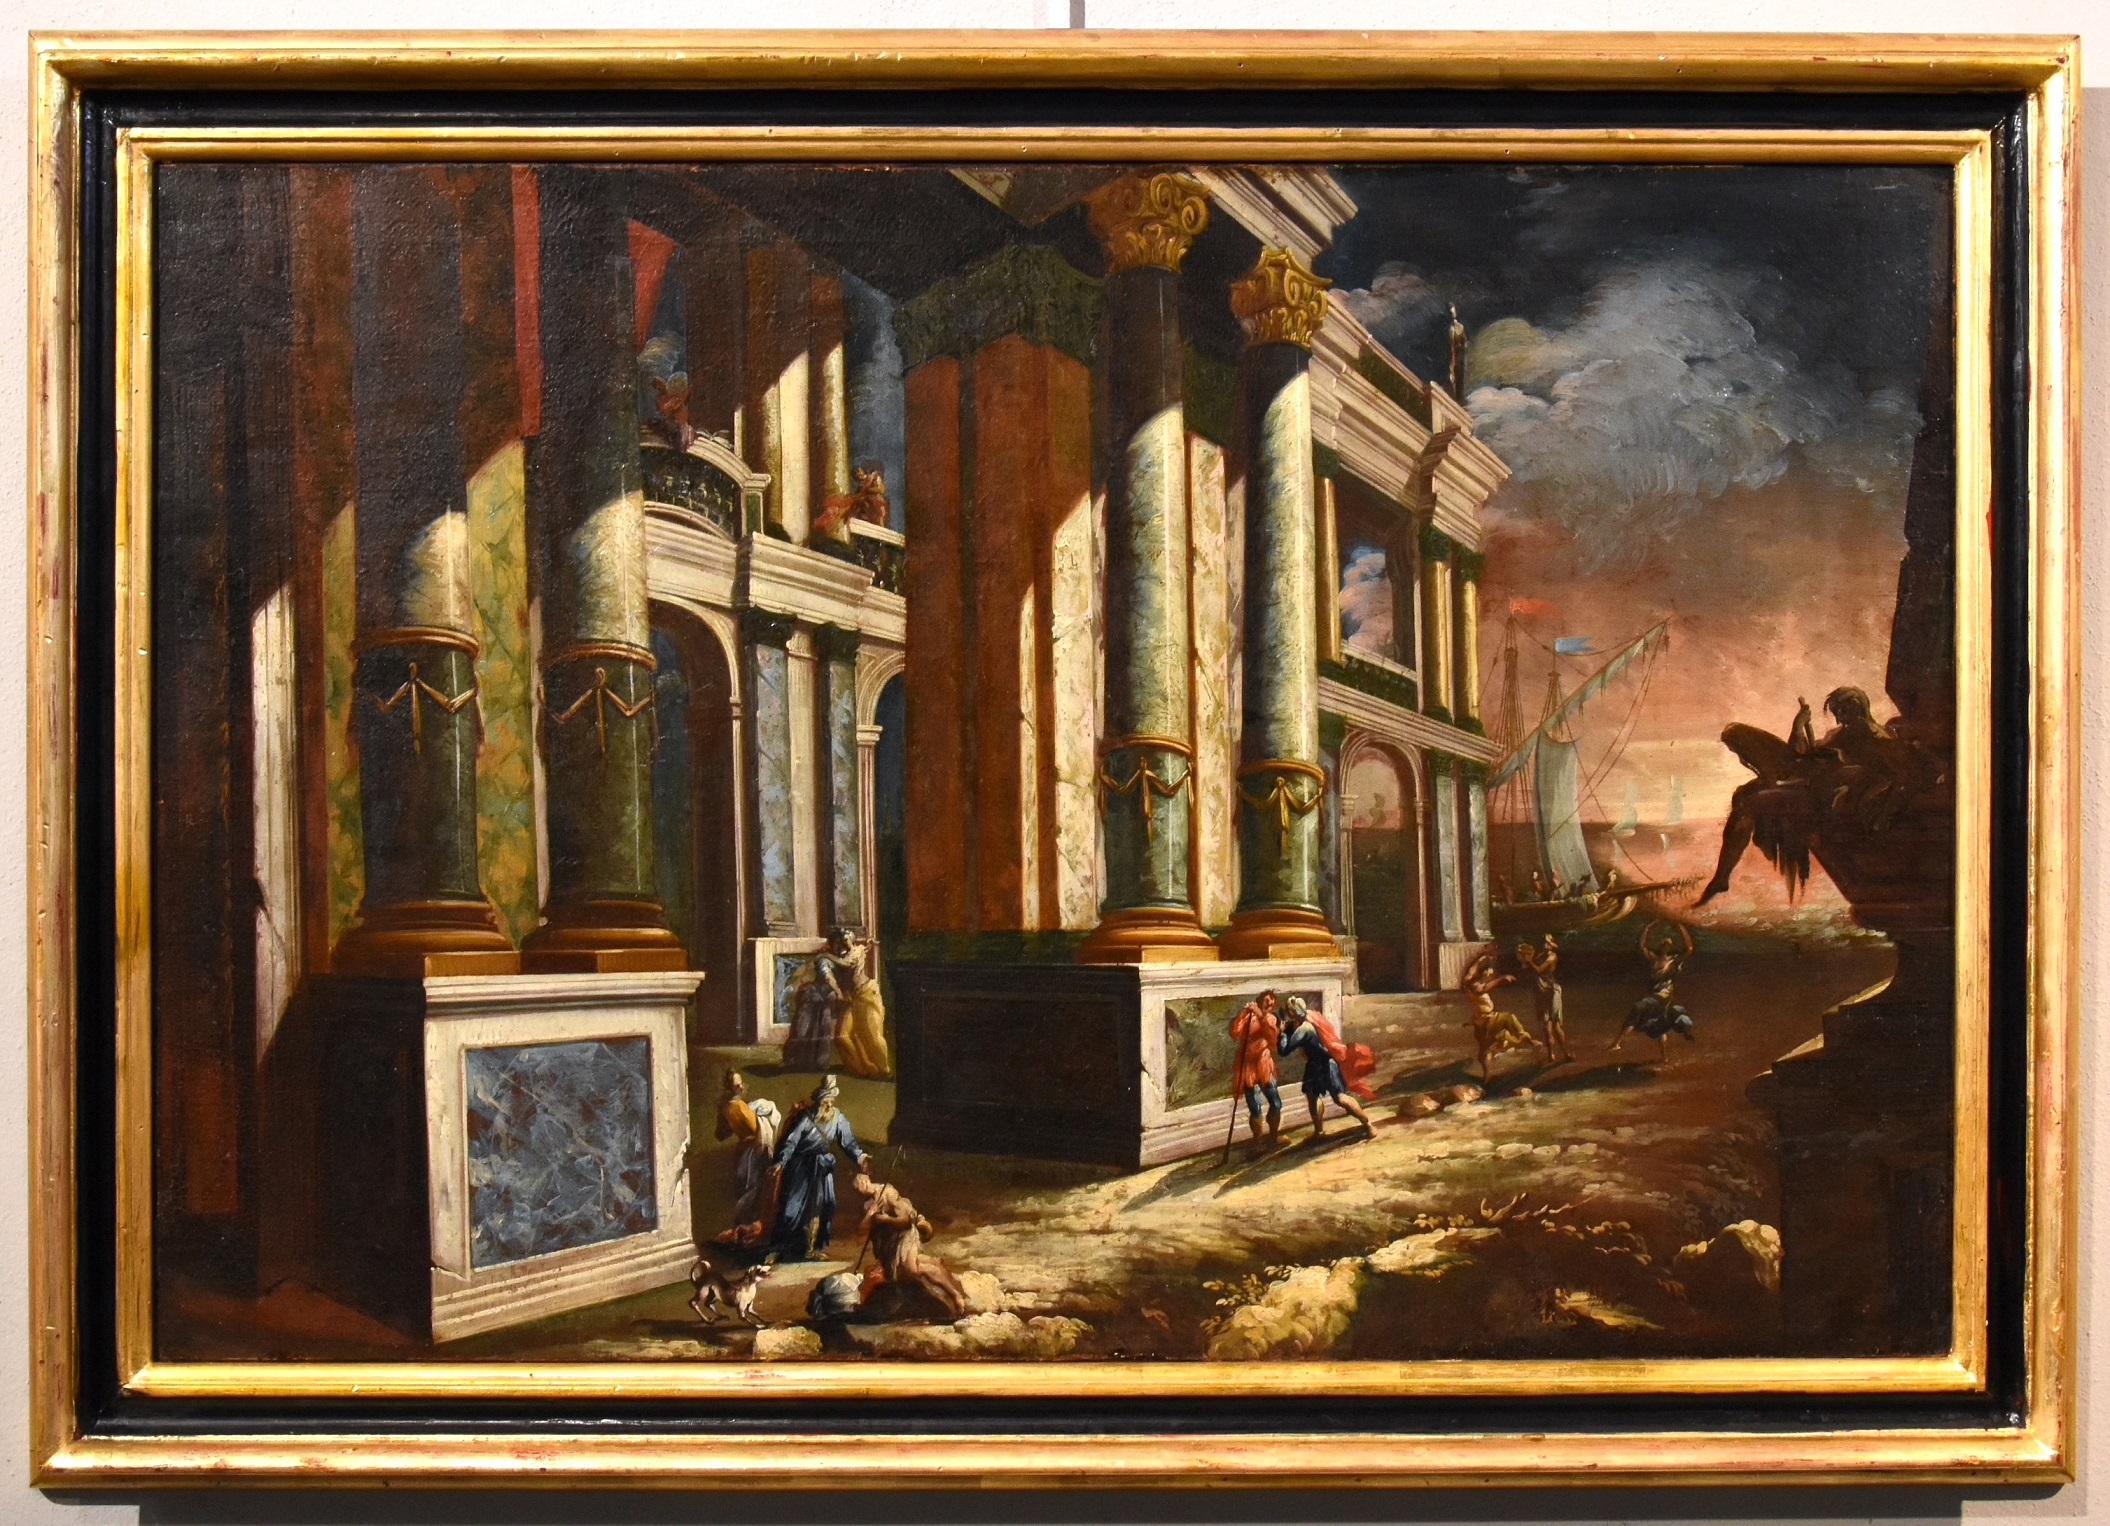 Küstenlandschaft Capriccio Saeys Paint Öl auf Leinwand 17/18. Jahrhundert Flämisch  – Painting von Jacob Ferdinand Saeys (Antwerp 1658 - Vienna 1726)